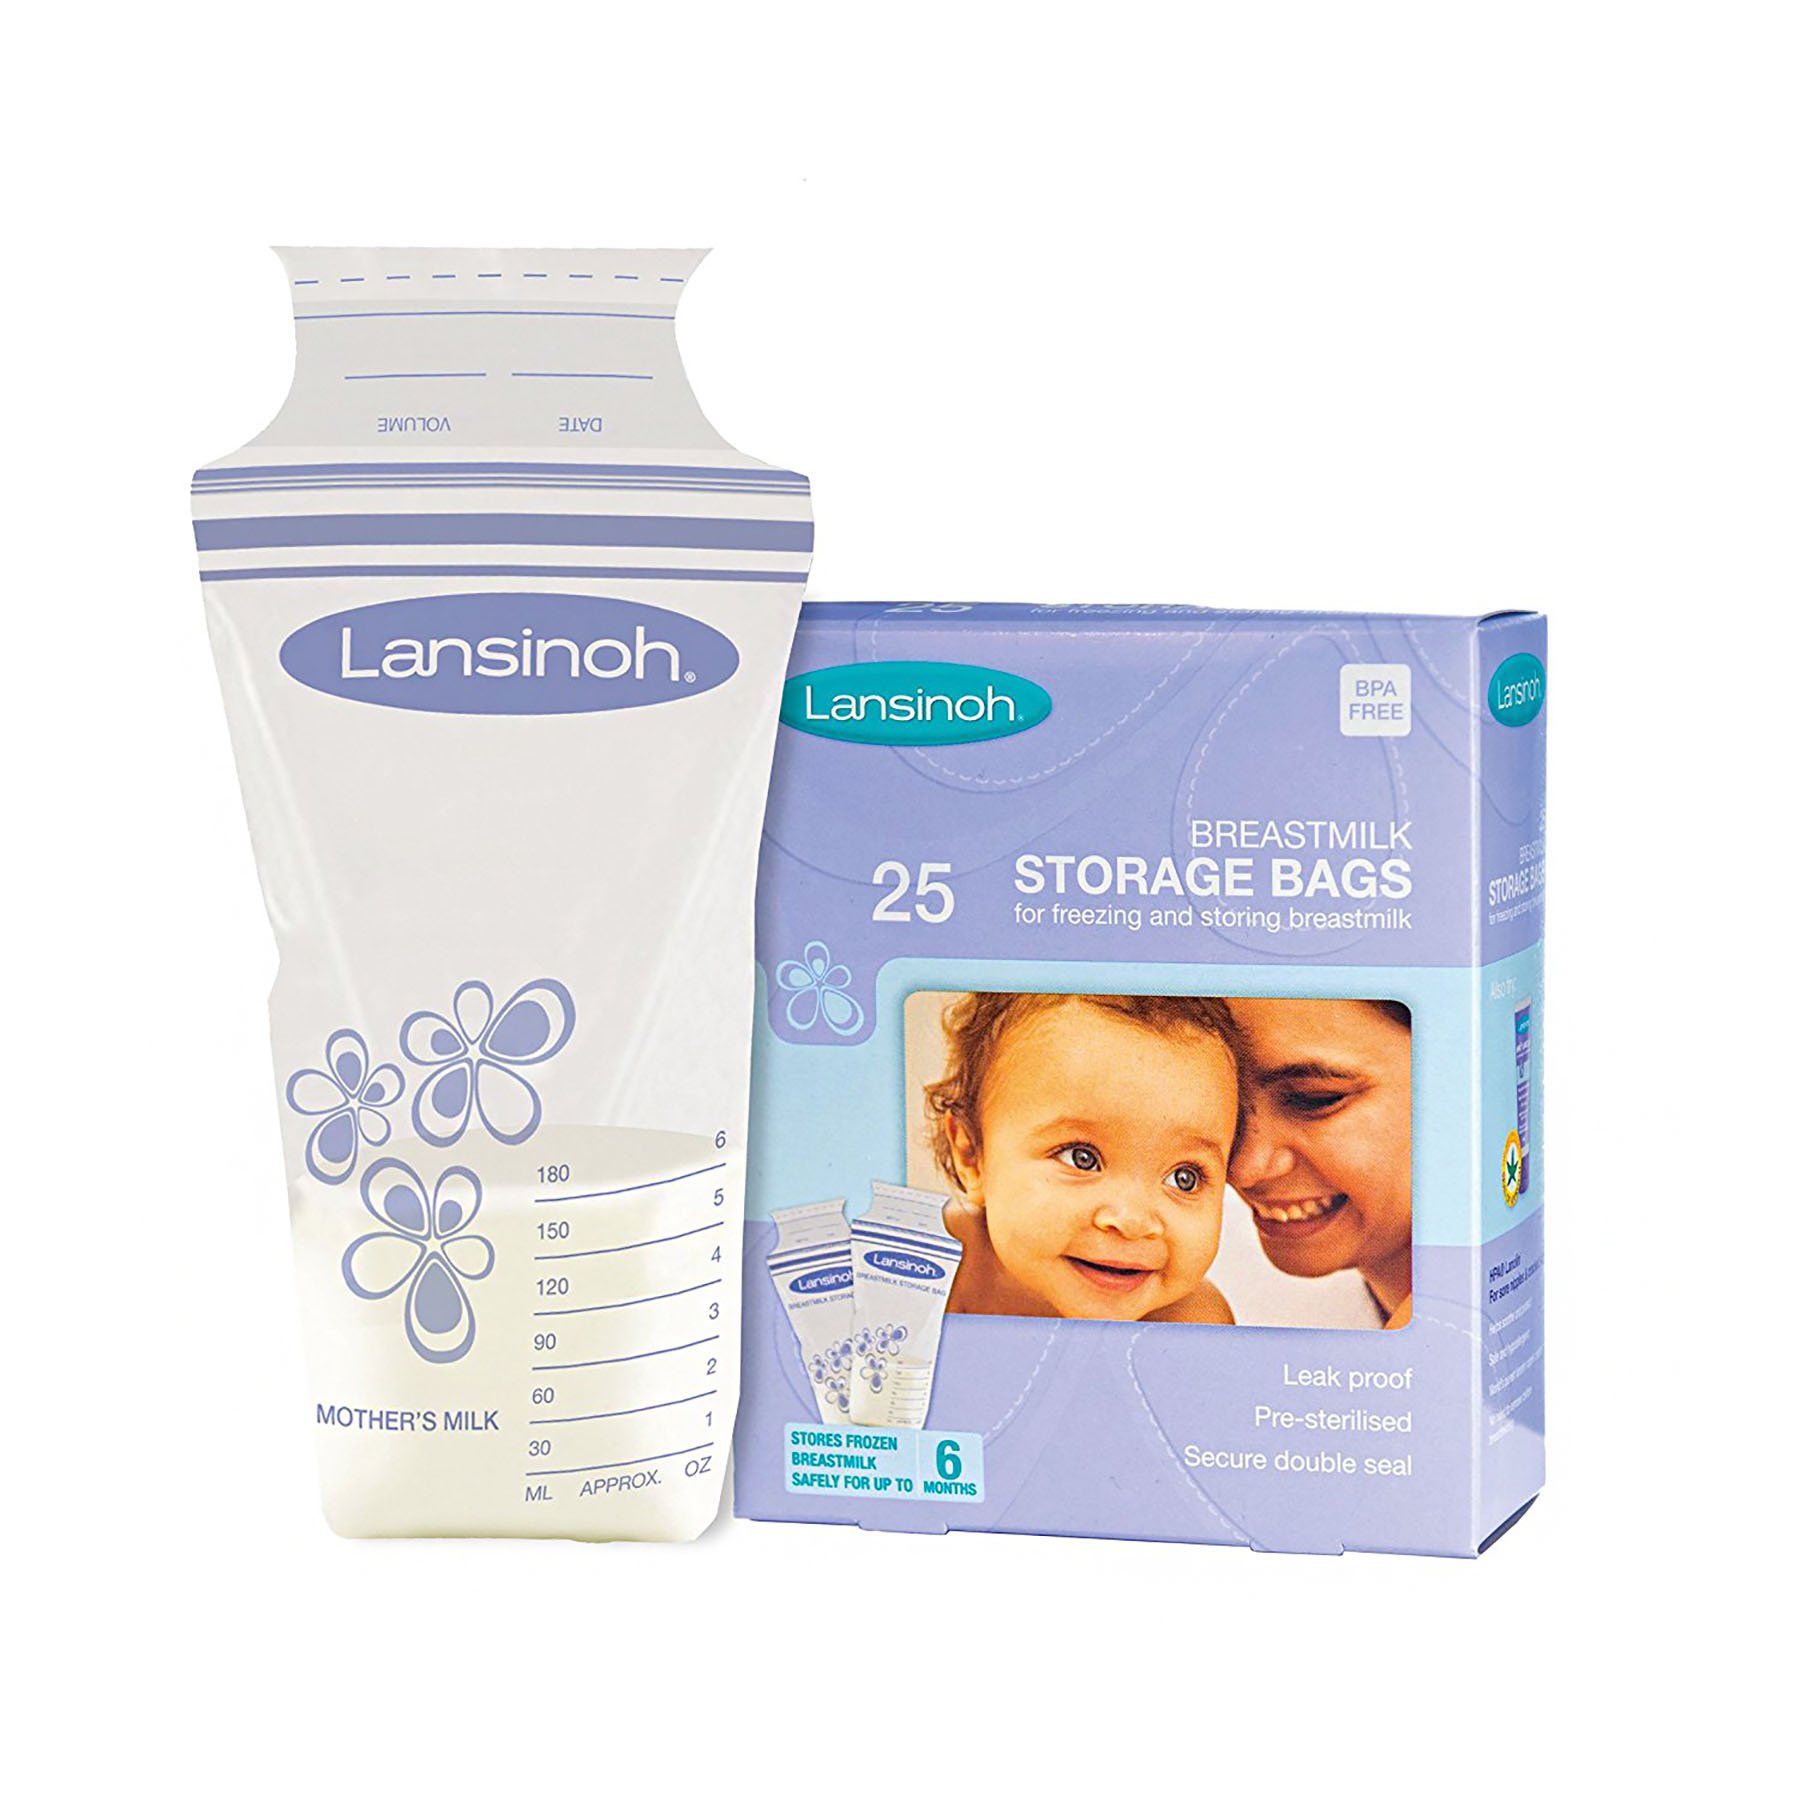 Lansinoh Breast Milk Storage Bag, 25 per Box